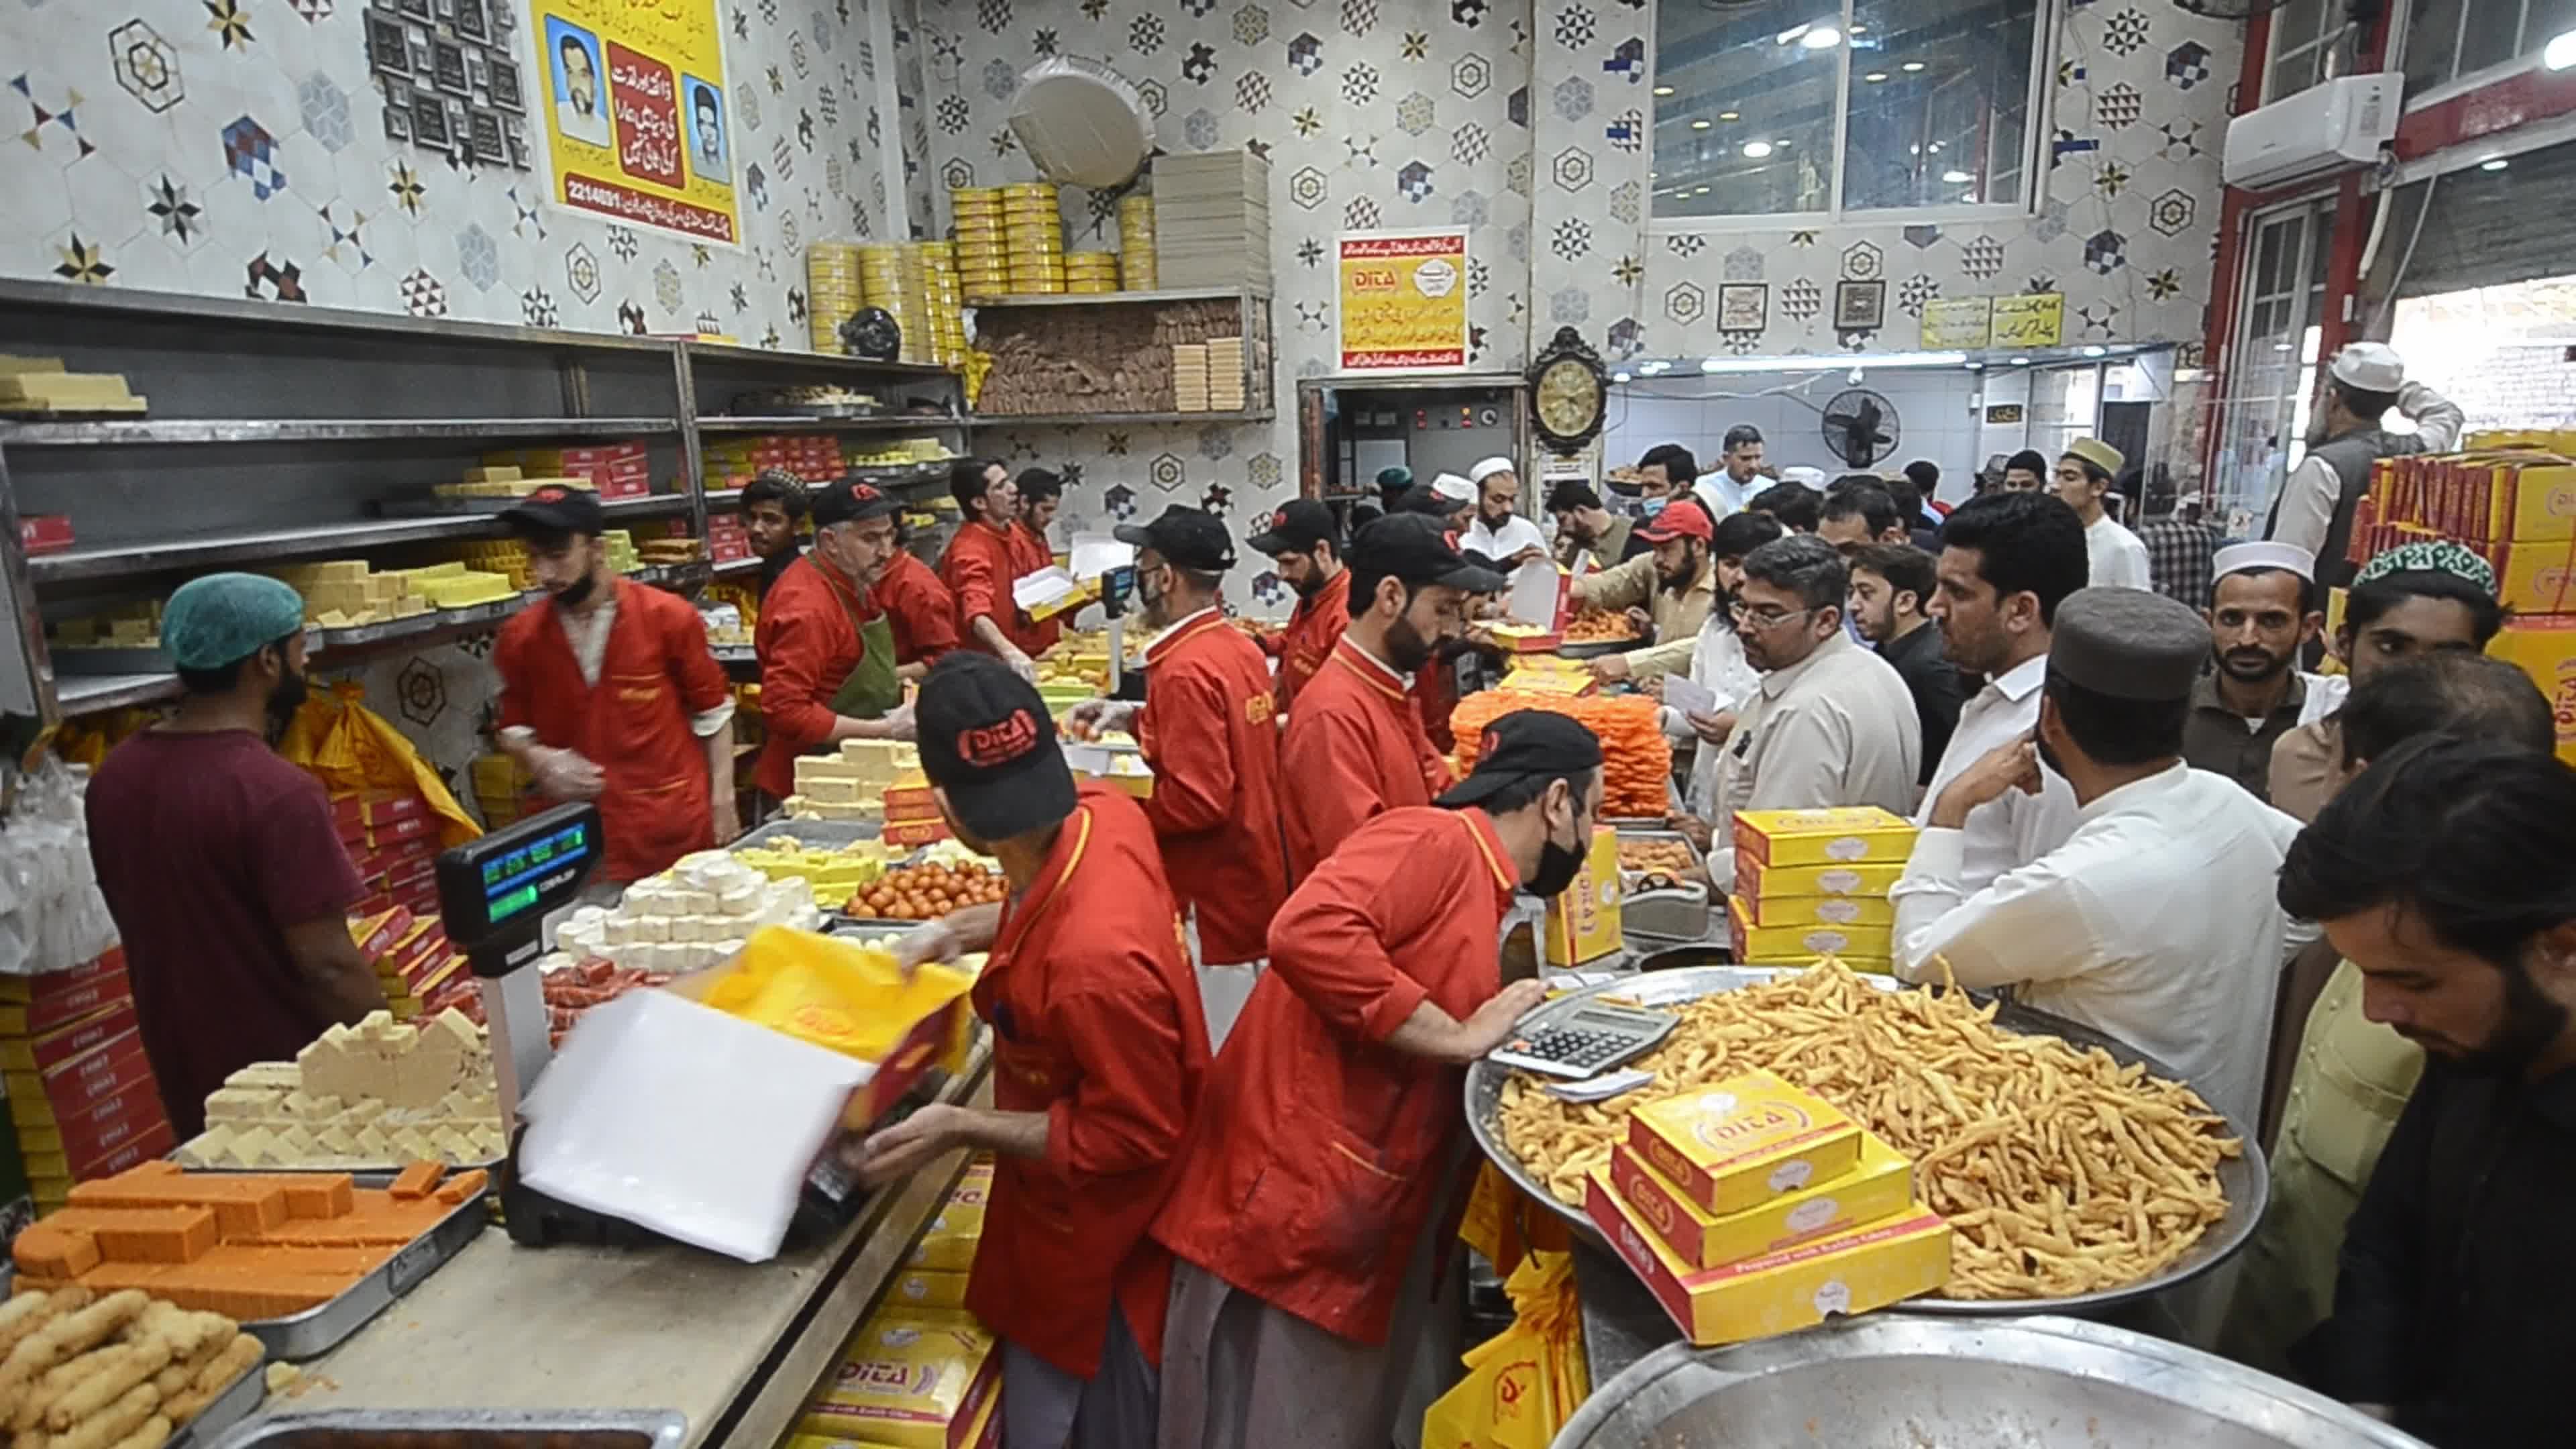 Sweets sales ahead of Eid al-Fitr in Pakistan 